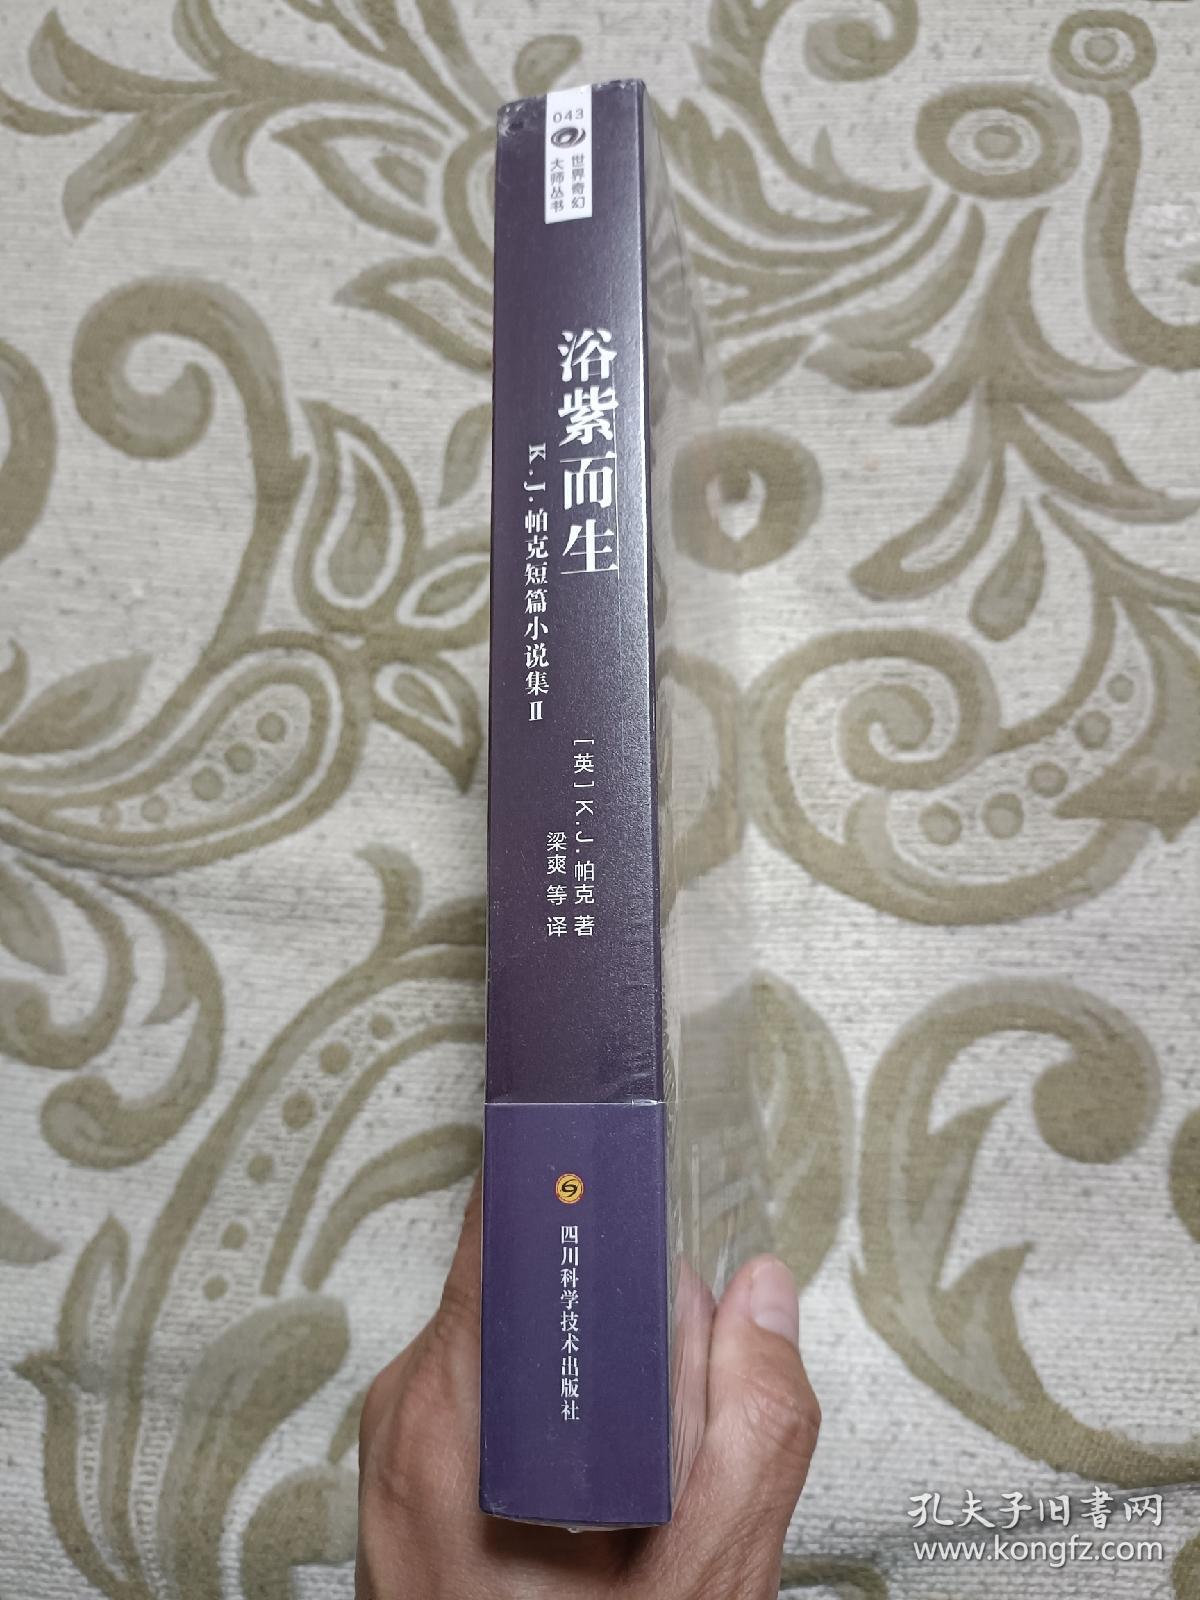 【正版现货】浴紫而生 K.J.帕克 世界奇幻大师丛书